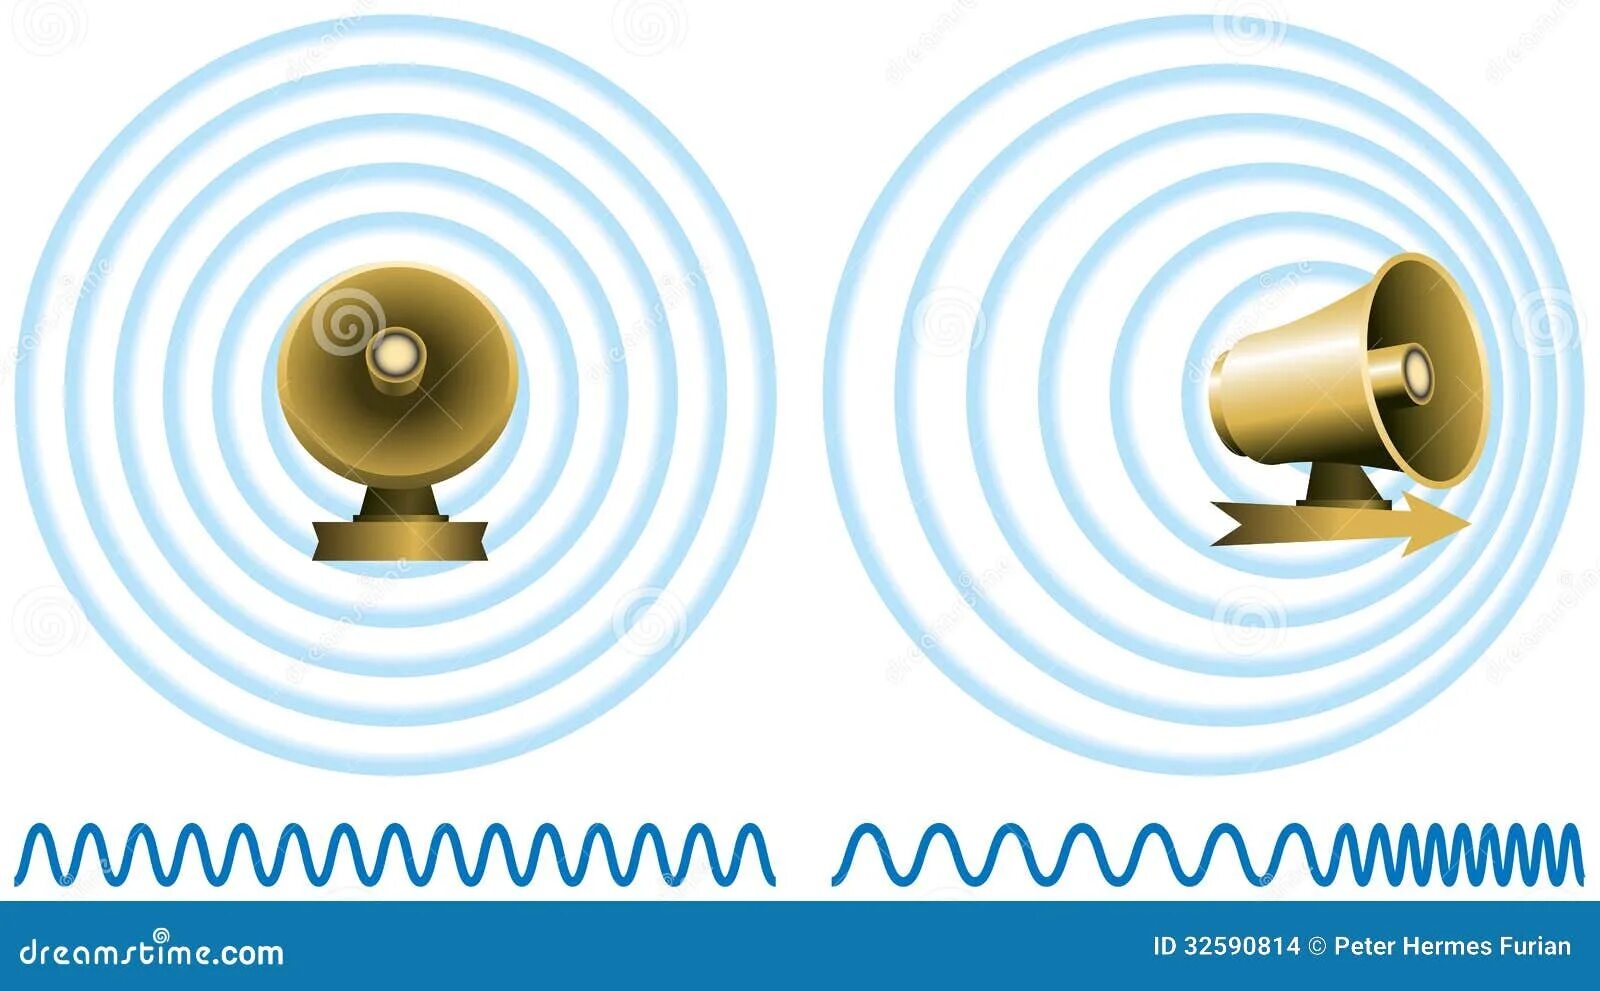 Эффект Доплера иллюстрация. Иллюстрация эффекта Доплера сигнал спутника. Звуковые волны динамик. Акустические волны земли. Движущийся источник звука